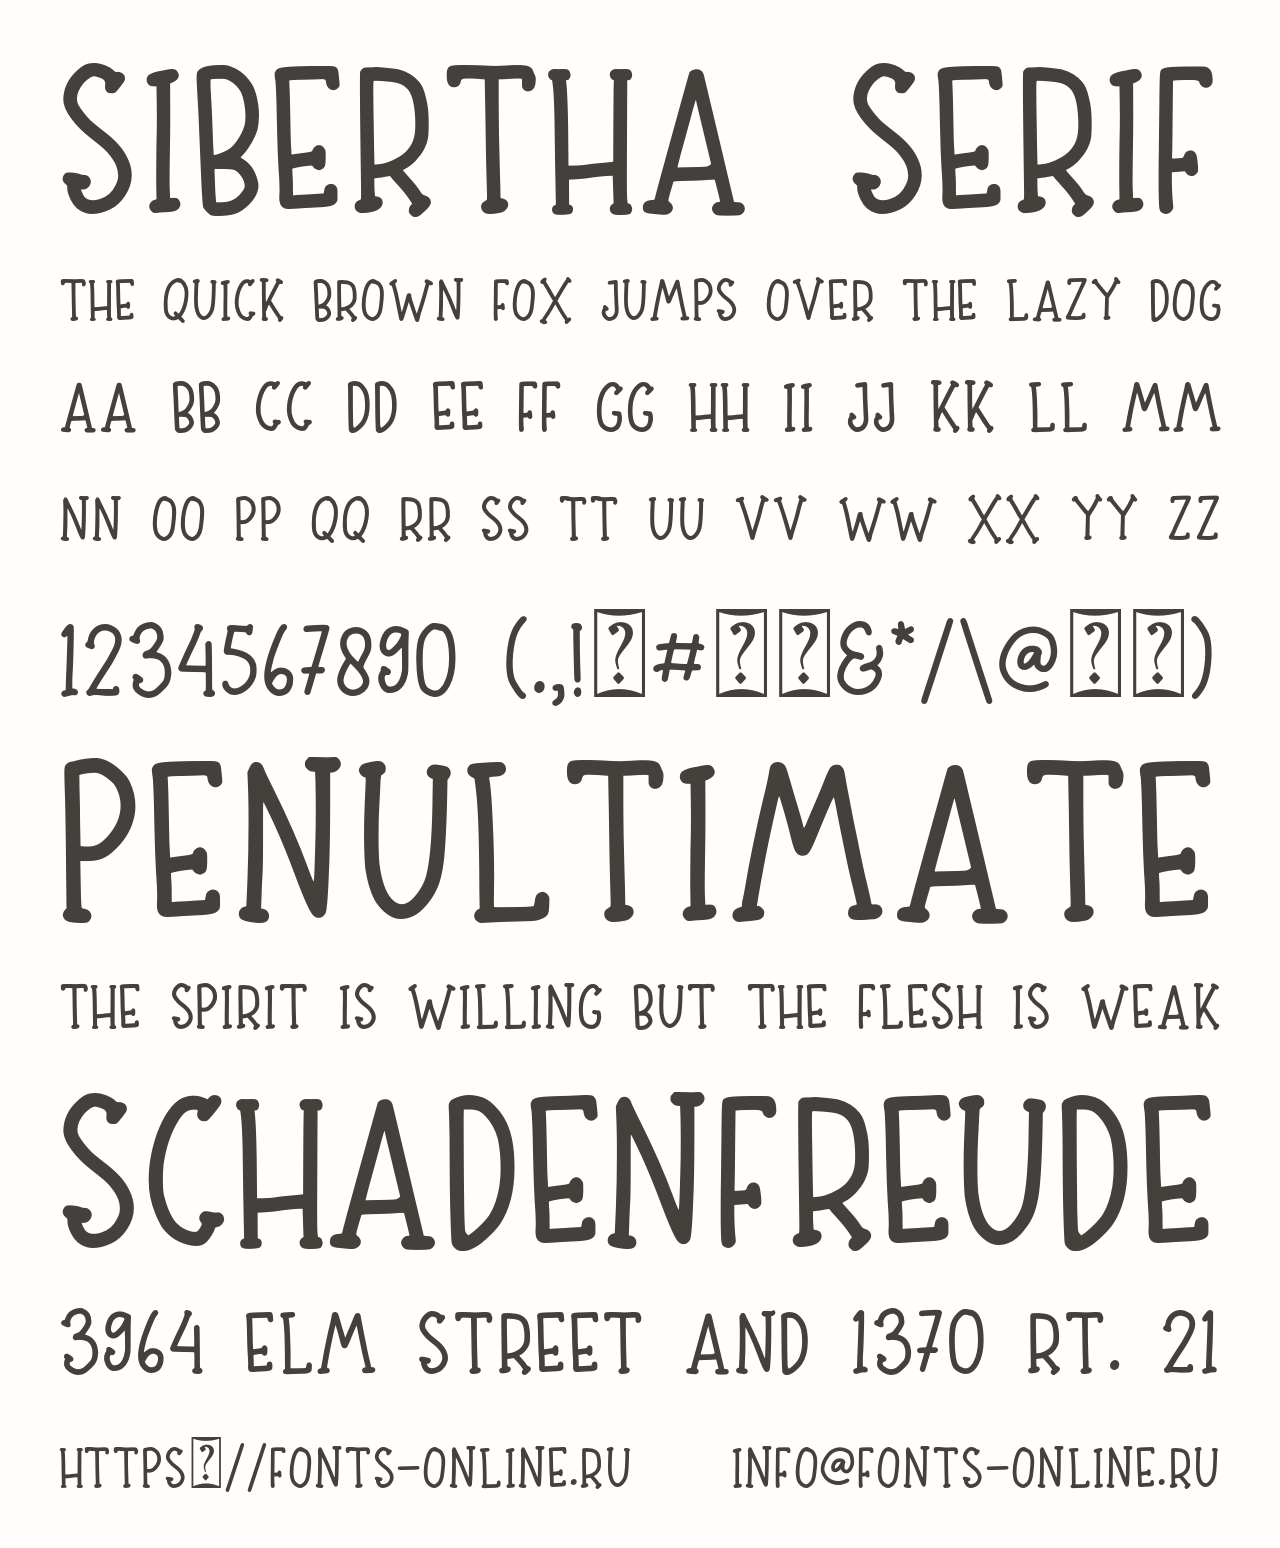 Шрифт Sibertha serif